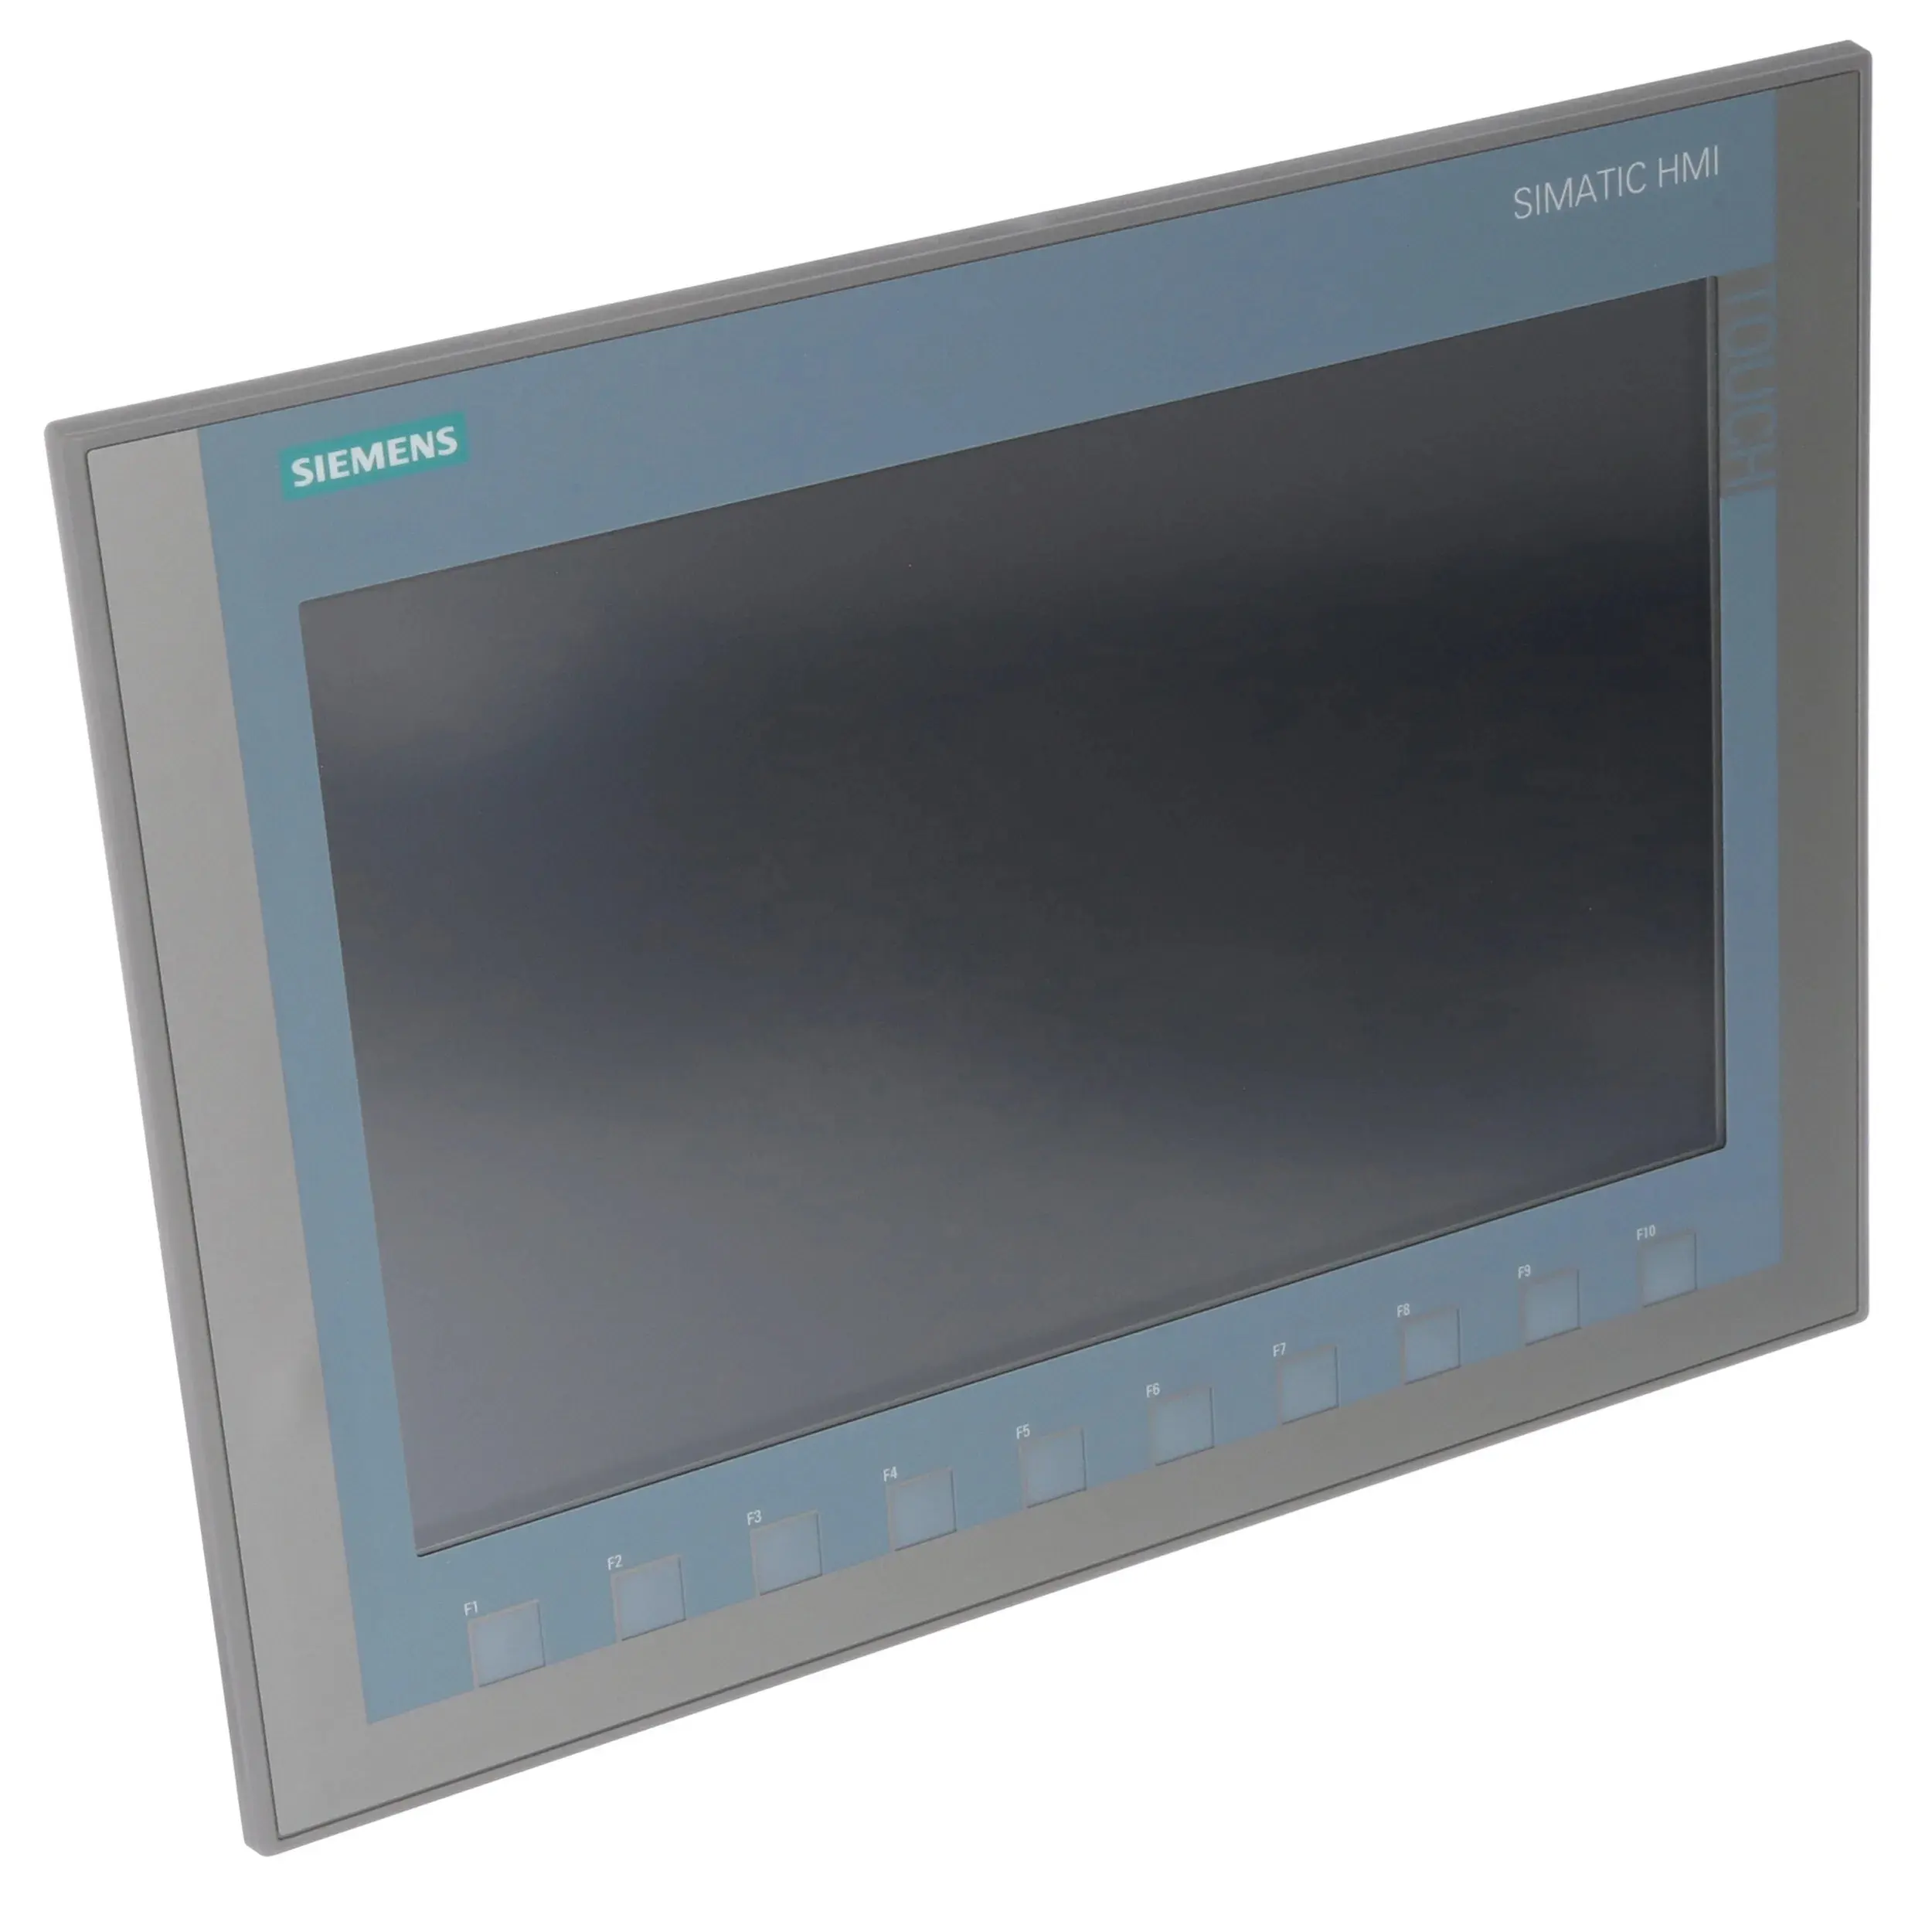 Industriële Automatisering Simatic Hmi Ktp1200 Basisinterface Touchscreen 6av2123-2mb03-0ax0 6av2123-2 Gb03-0ax0